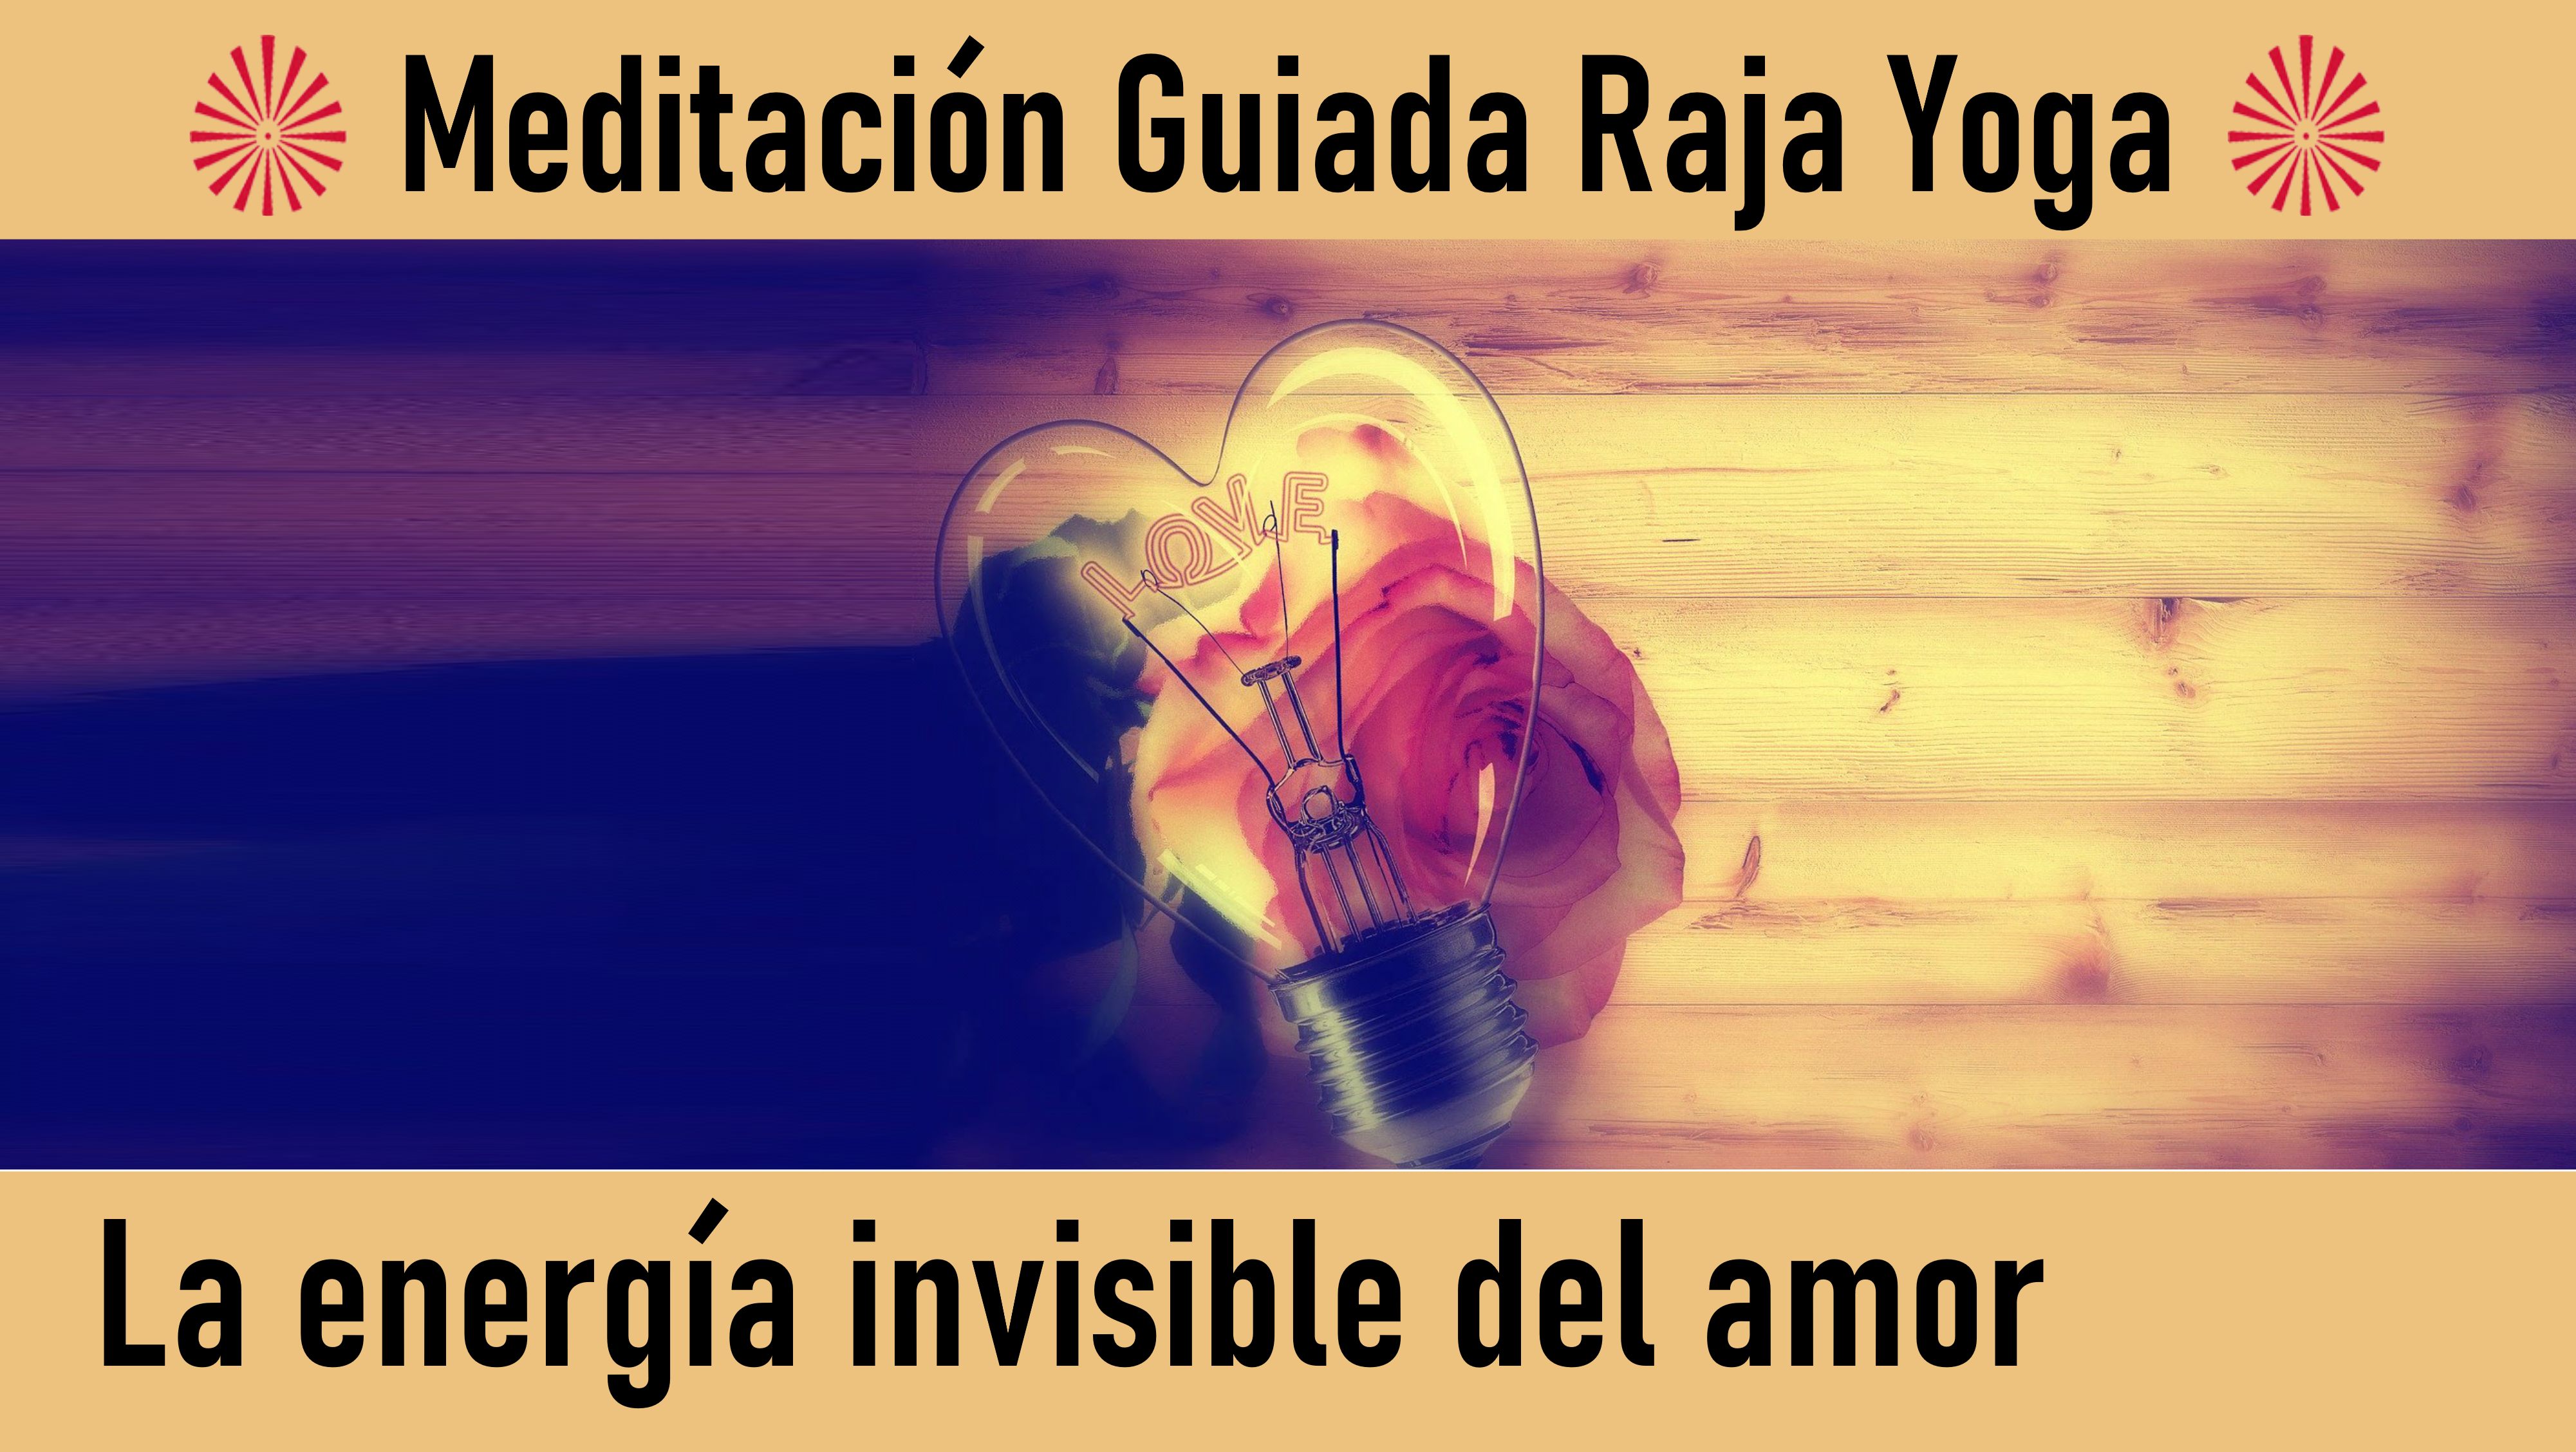 Meditación Raja Yoga: La energía invisible del amor (20 Julio 2020) On-line desde Madrid